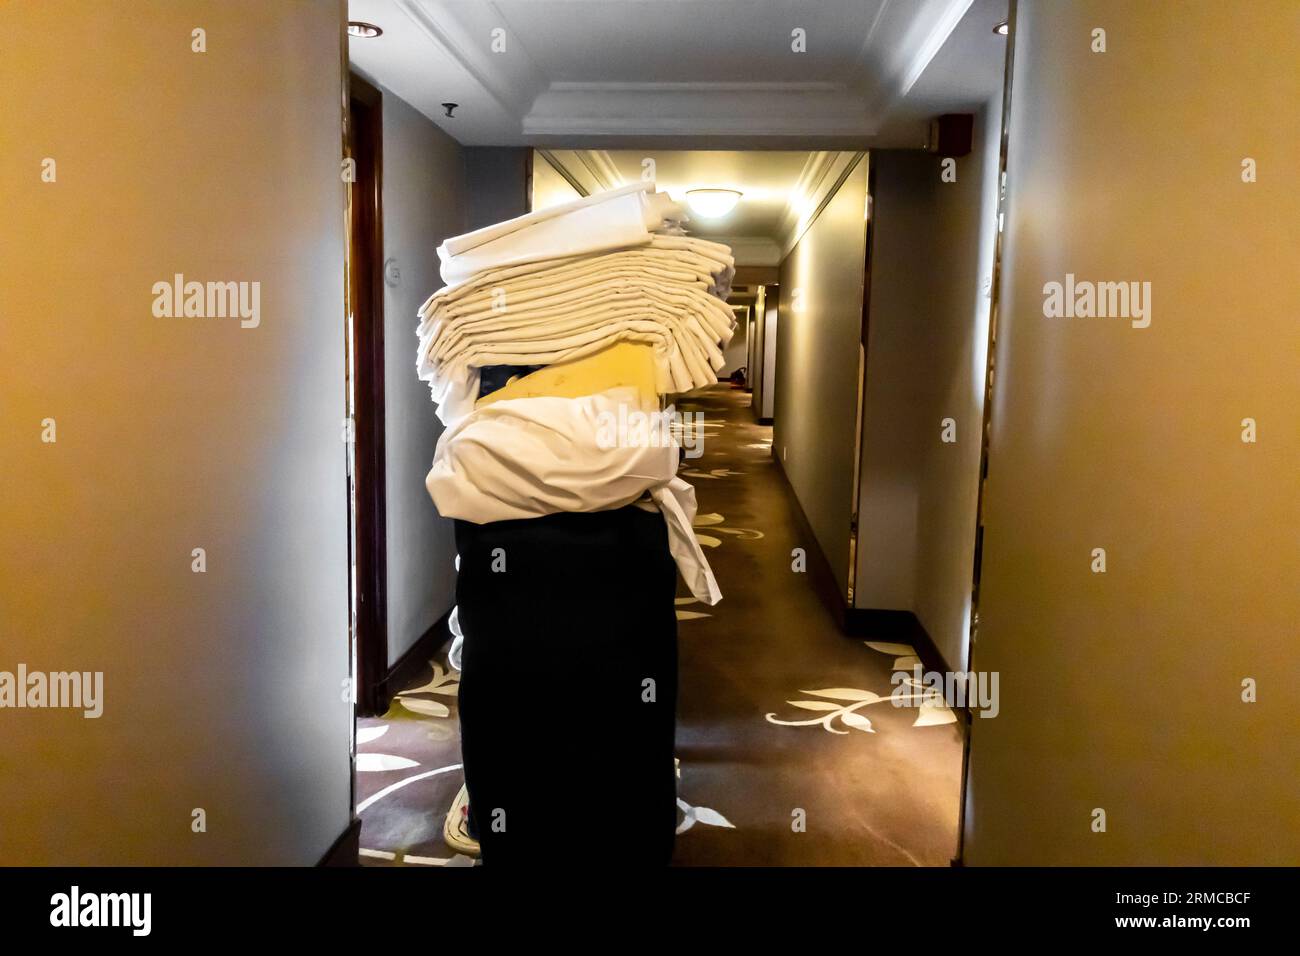 Housekeeping-Wagen mit benutzten und frischen Bettwäsche, benutzte Bettwäsche in einem Hotelflur. Reinigung Gastfreundschaft Housekeeping Trolley im Flur in der Nähe der Zimmer Stockfoto